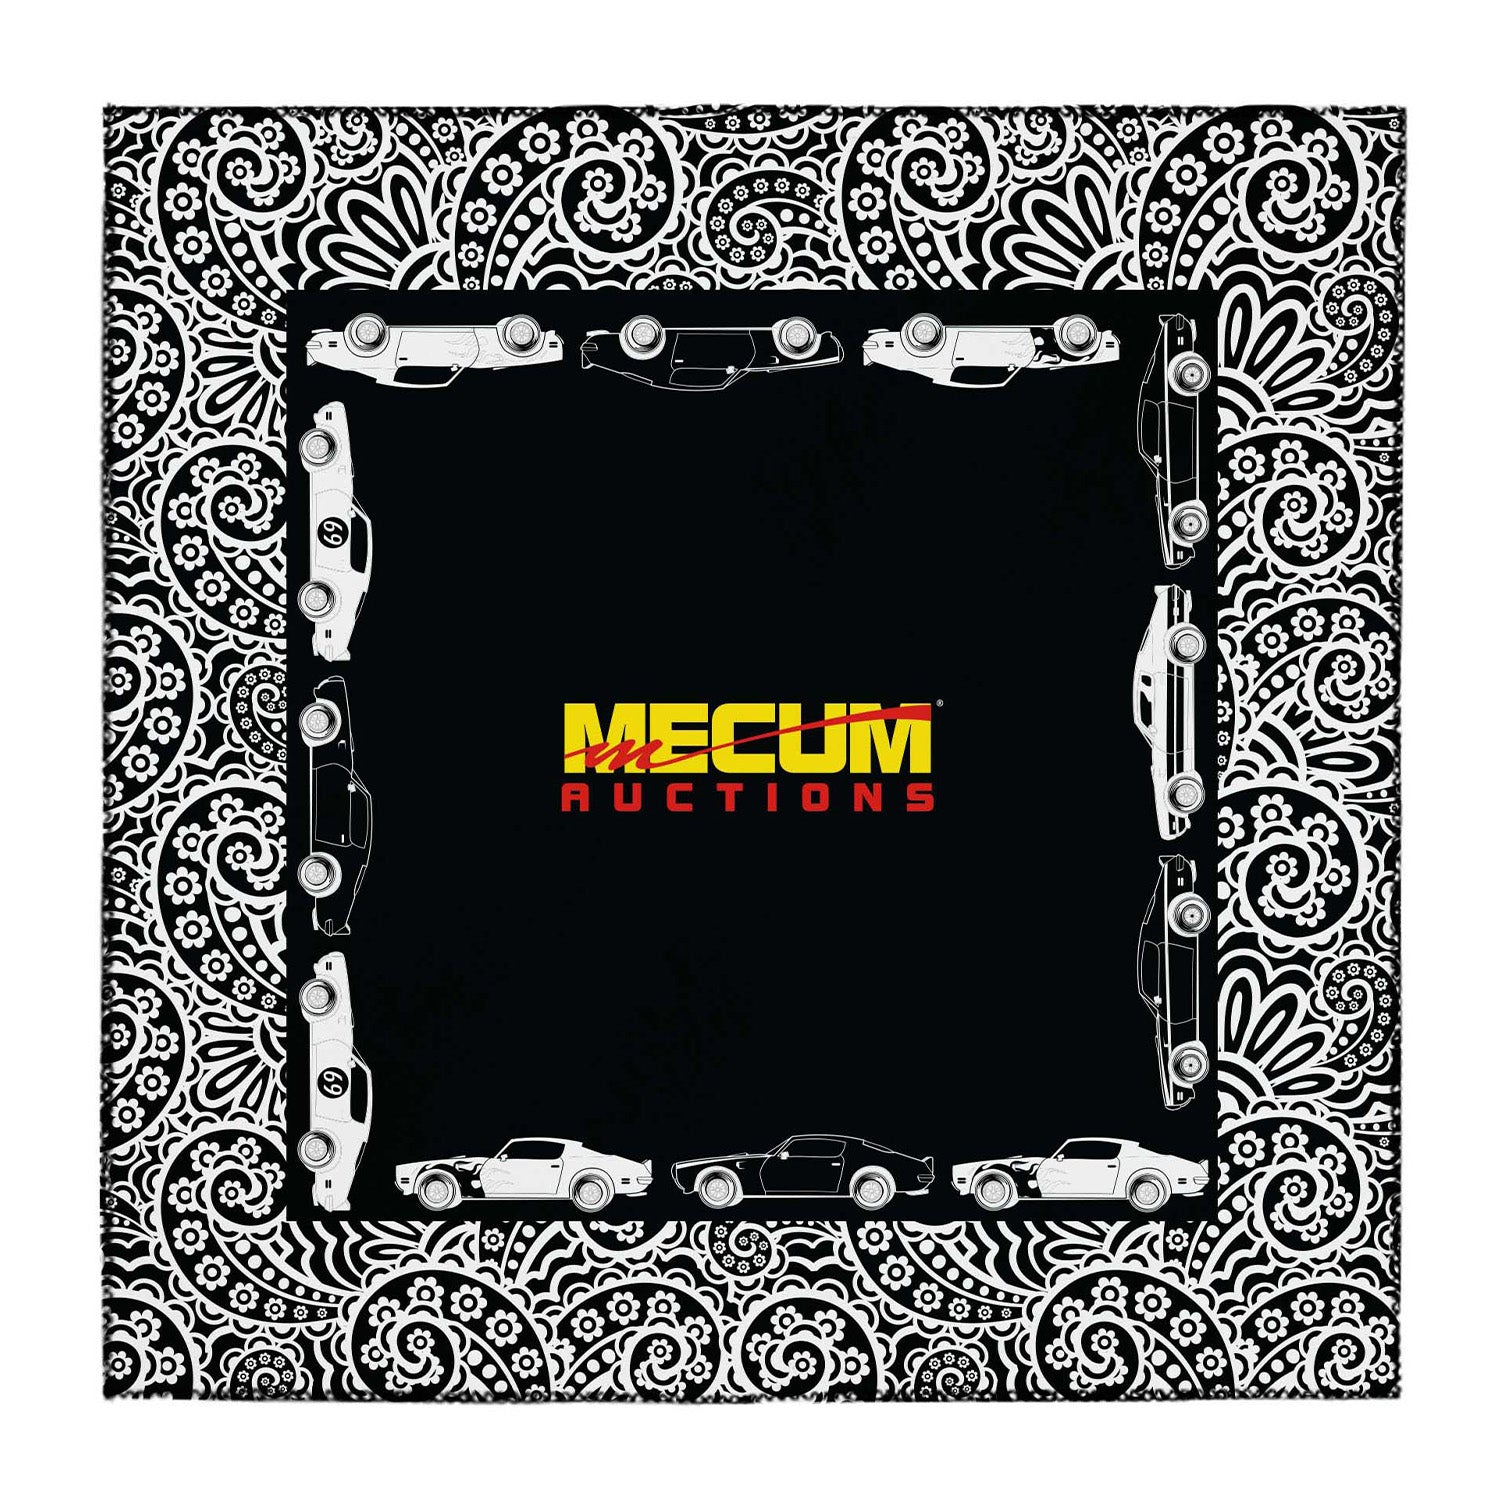 Mecum Auctions Black Bandana - Front View